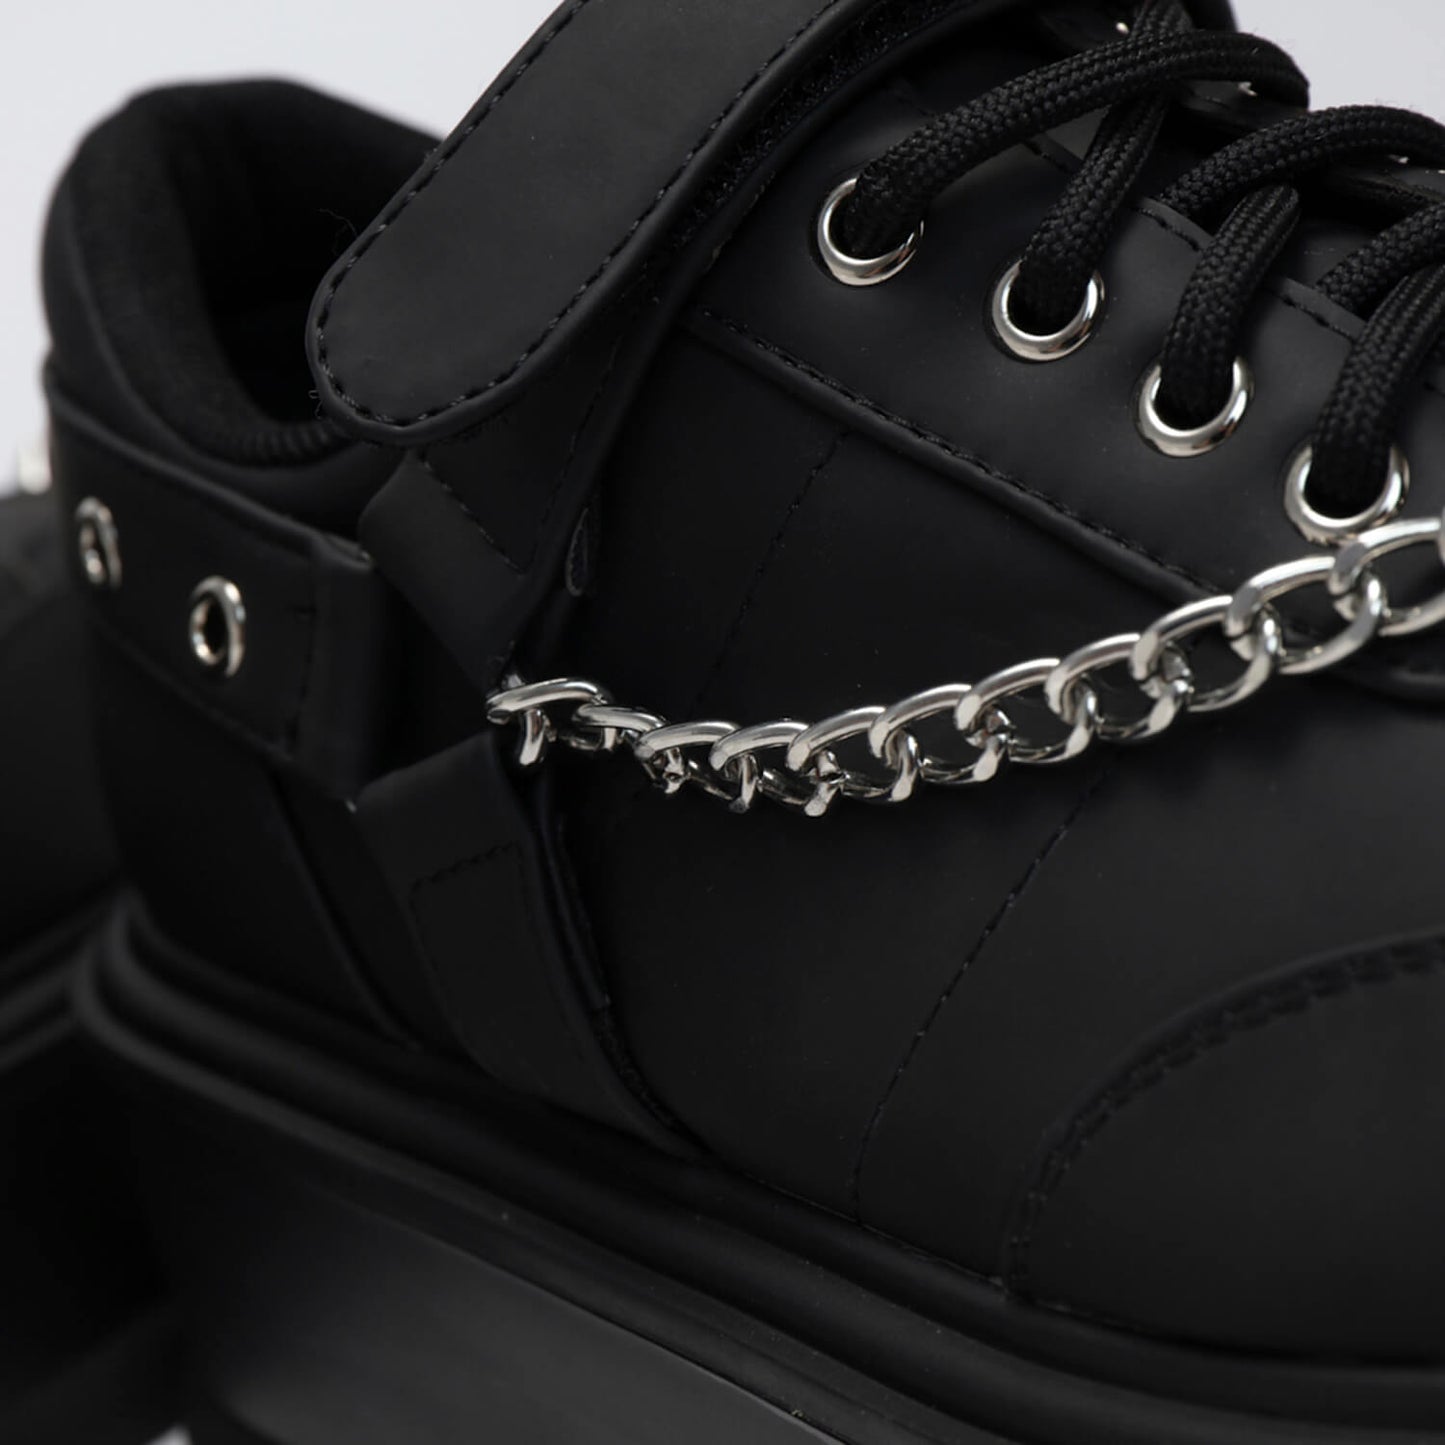 Retrograde Rebel Men's Black Platform Shoes - Shoes - KOI Footwear - Black - Side Detail